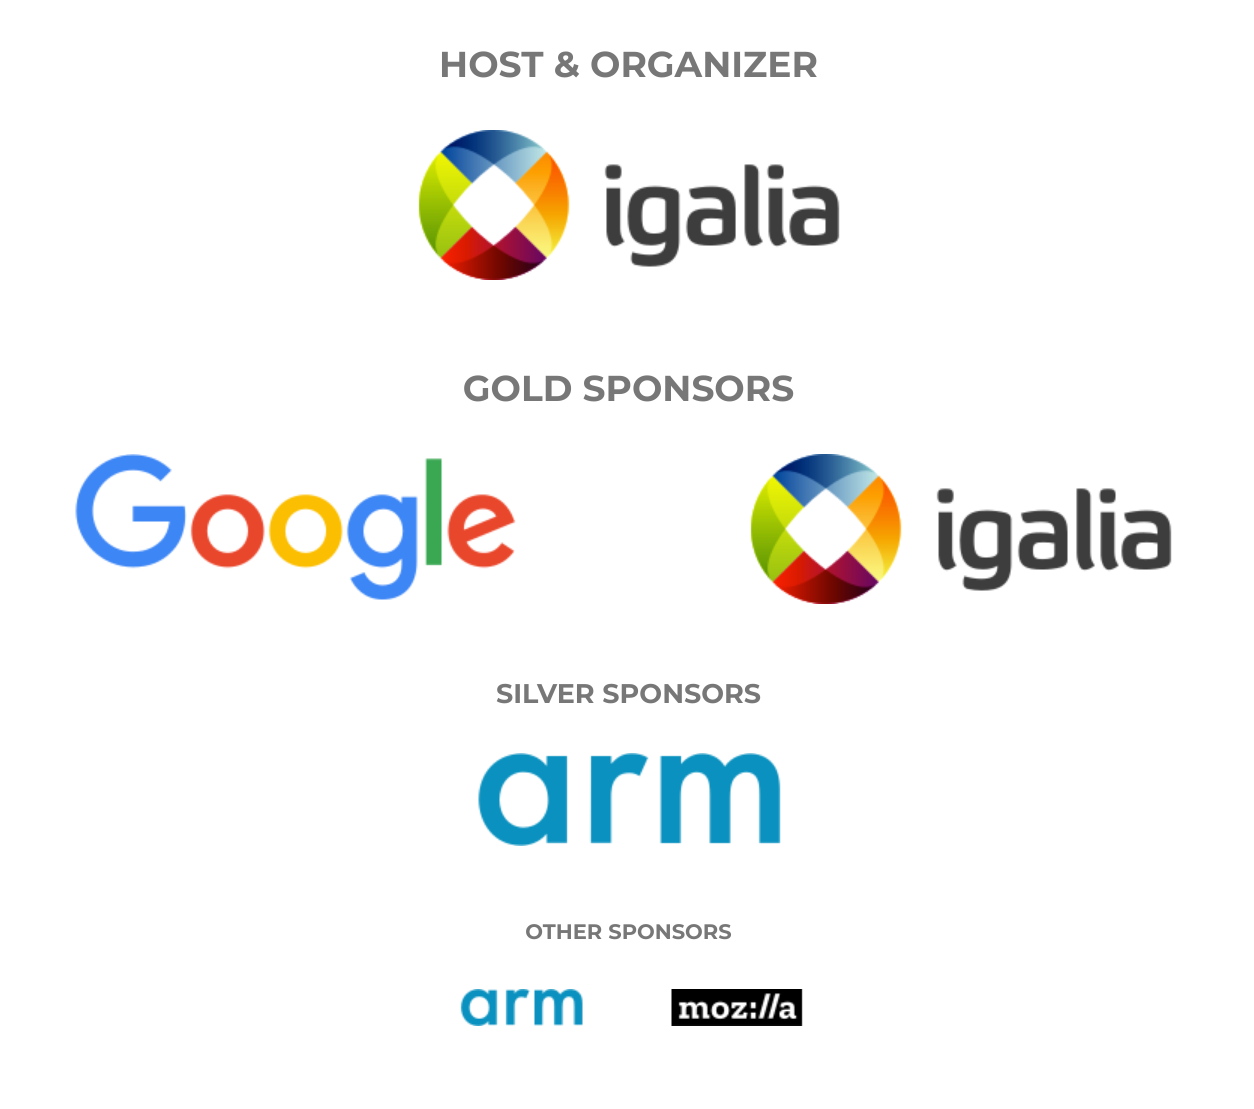 Web Engines Hackfest 2019 sponsors: Google and Igalia